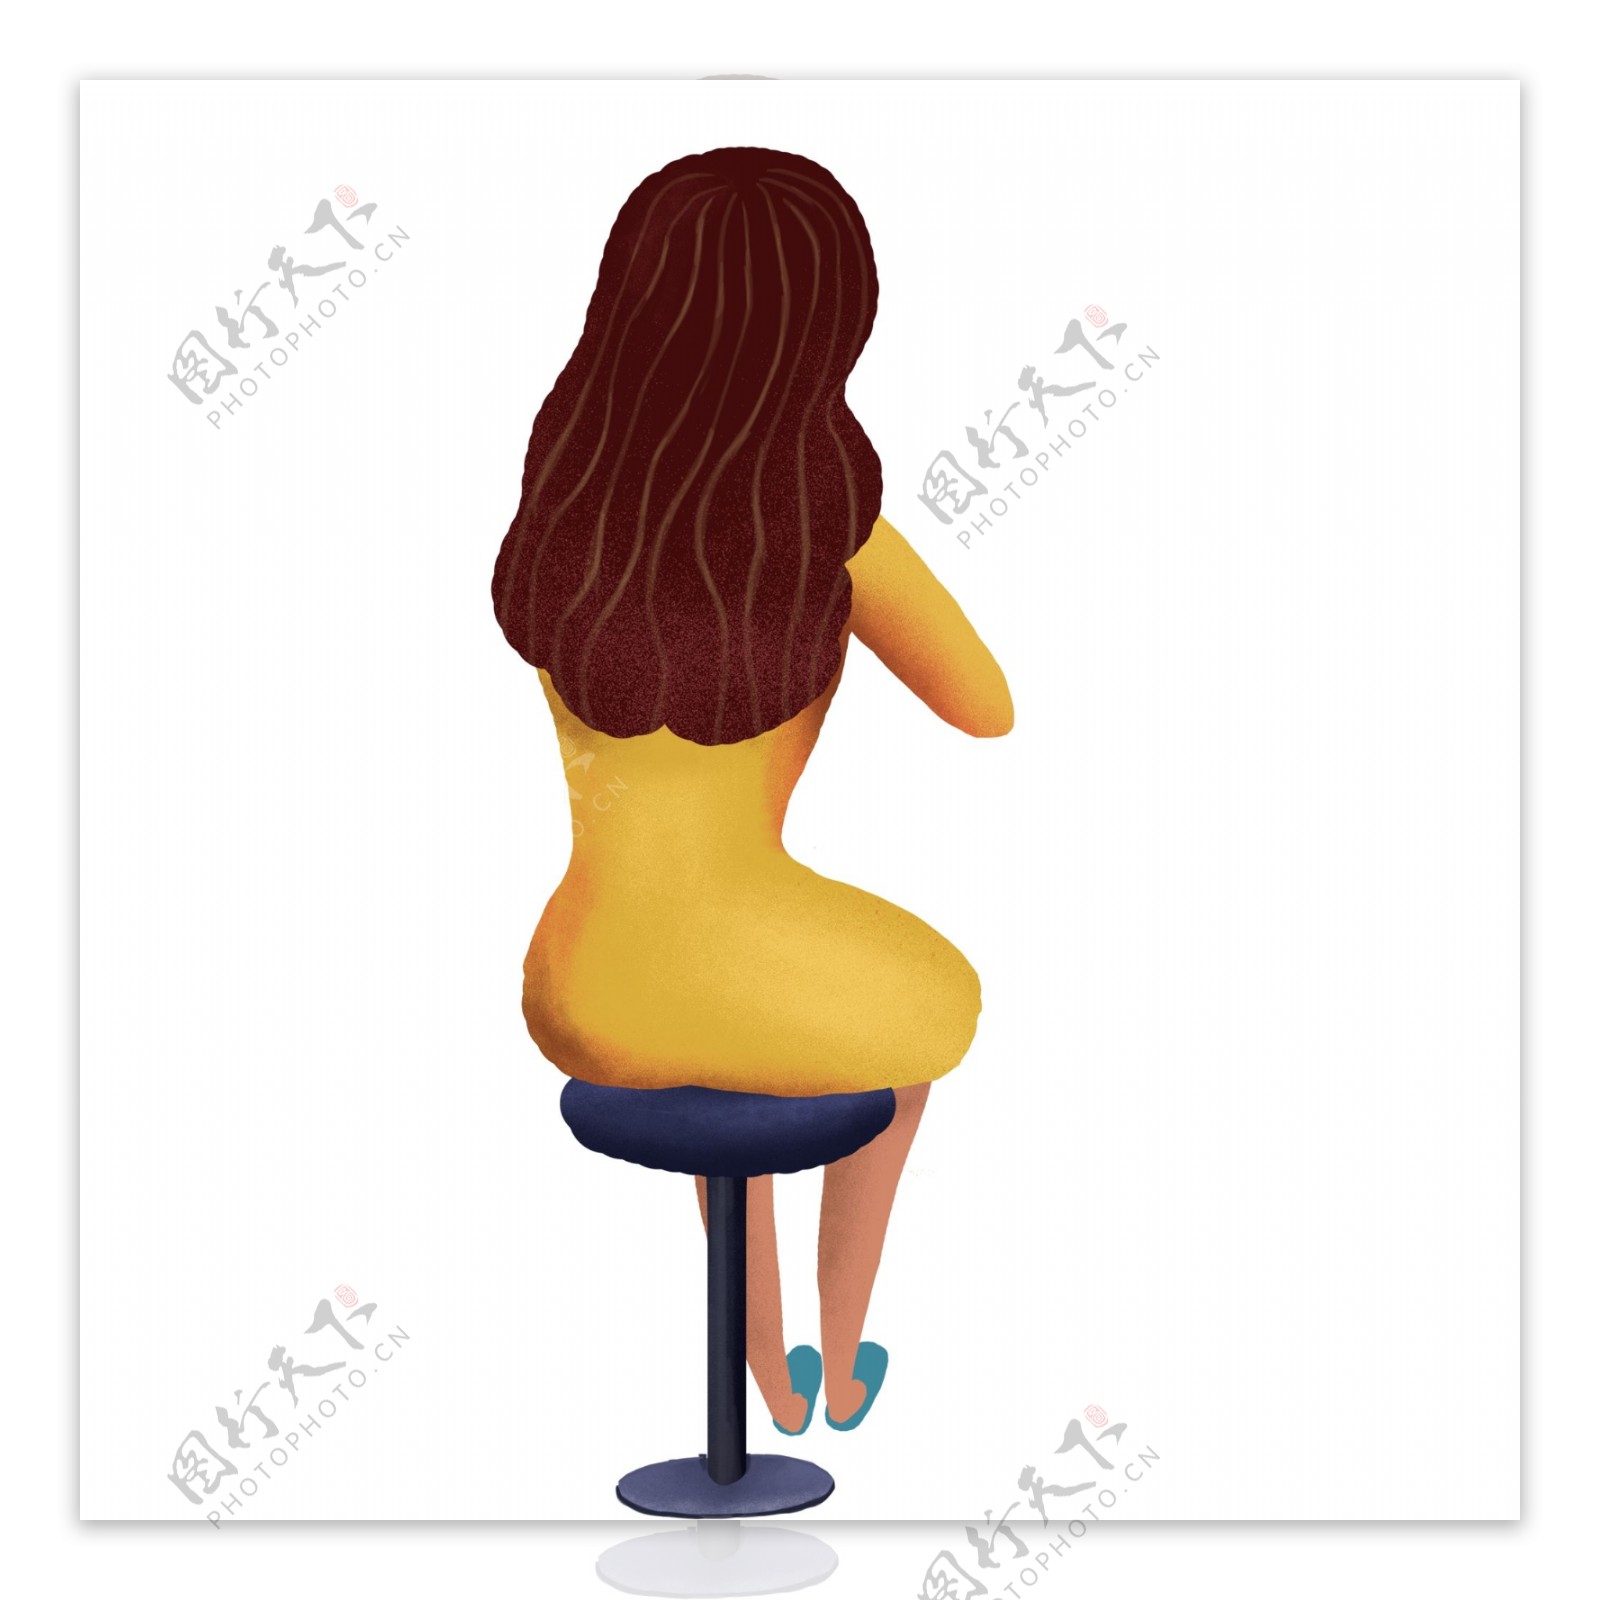 彩绘独自坐在椅子上的女孩人物背影设计